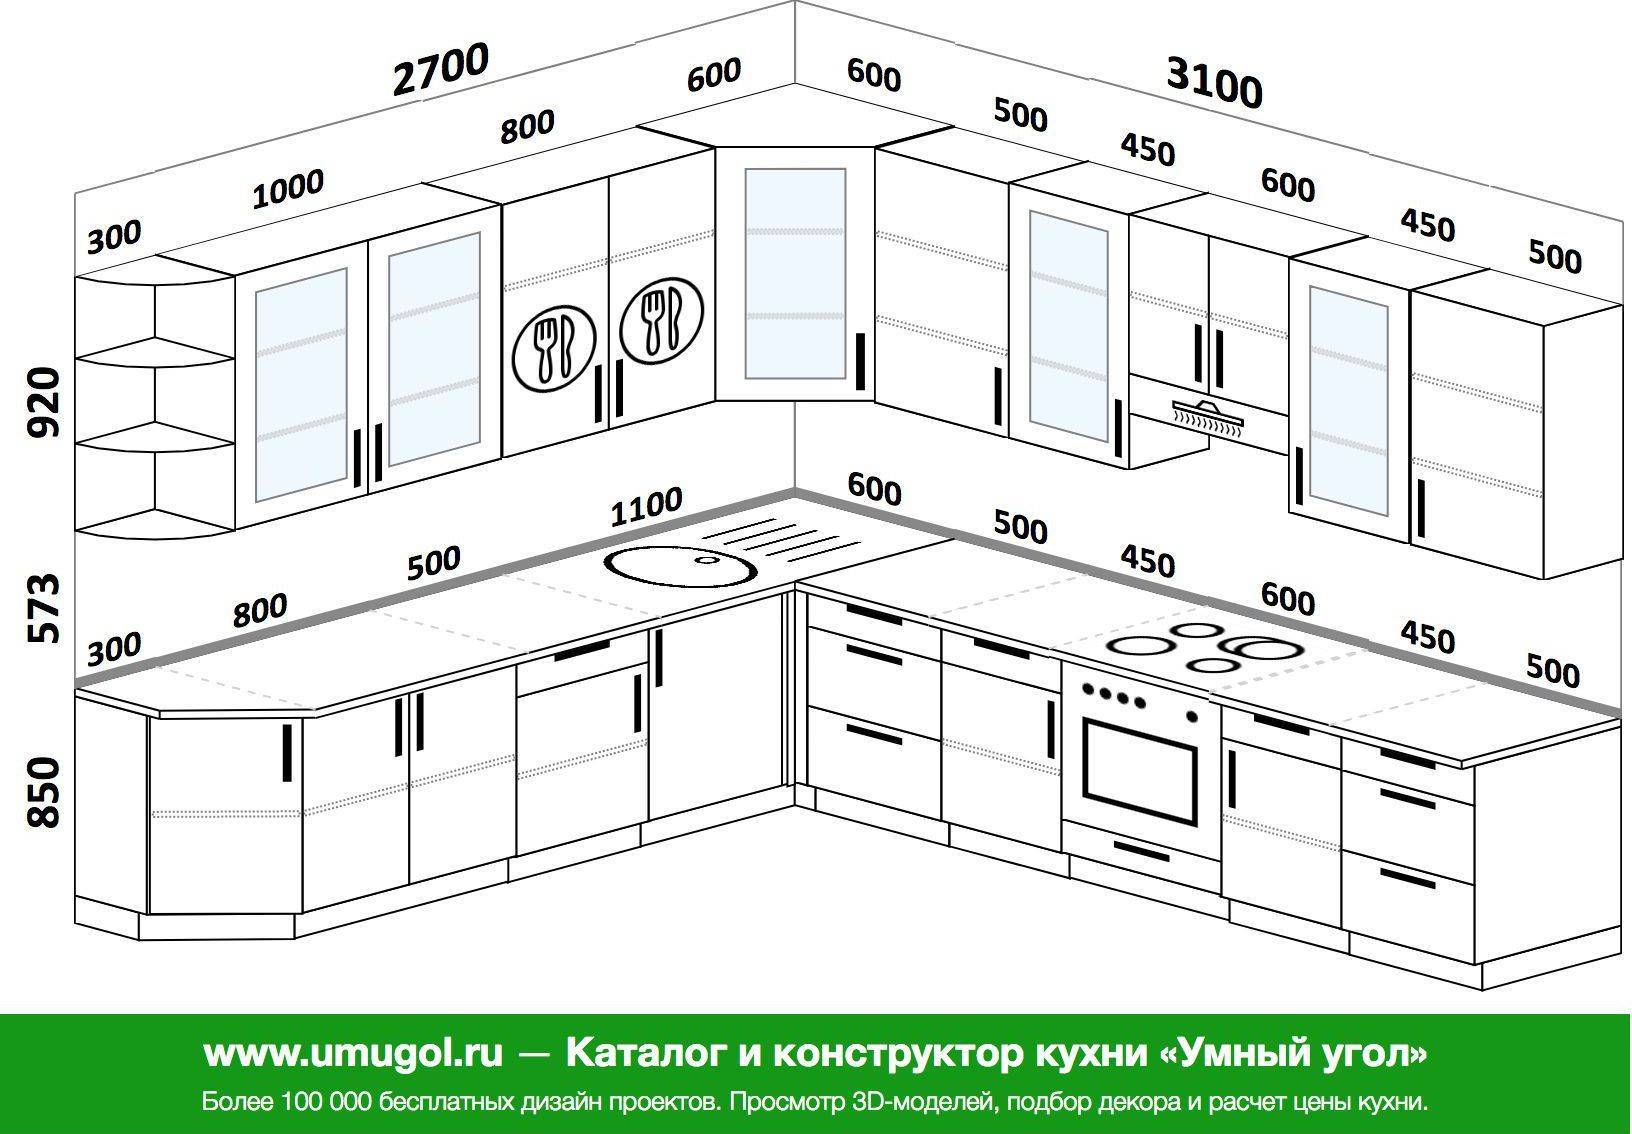 Шкаф кухонный навесной его модификации и их важные особенности